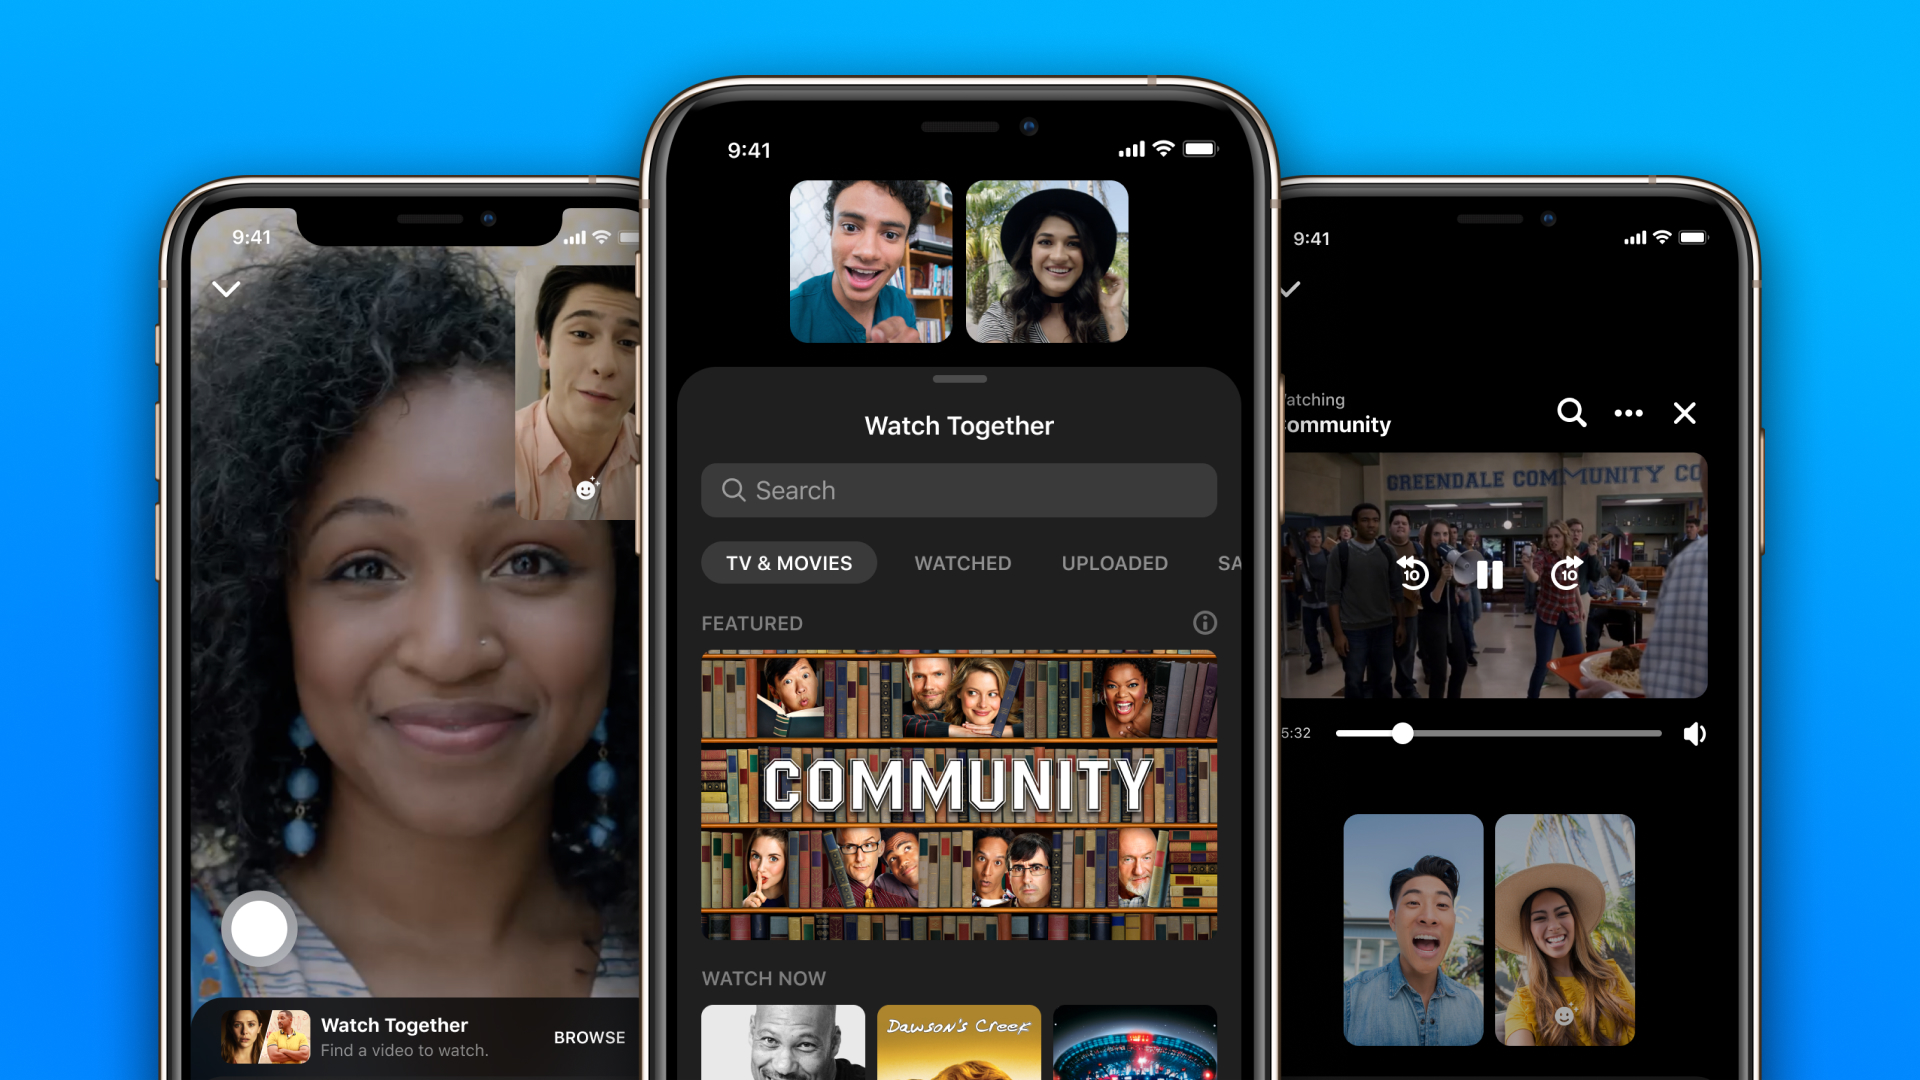 Cùng xem video trên Messenger với tính năng Watch Together của Messenger. Bạn có thể kết nối với bạn bè của mình để cùng xem những video hài hước và bổ ích mà không cần phải tìm kiếm hoặc chia sẻ bên ngoài ứng dụng. Đó sẽ là một trải nghiệm thú vị và gần gũi hơn với bạn bè của mình.